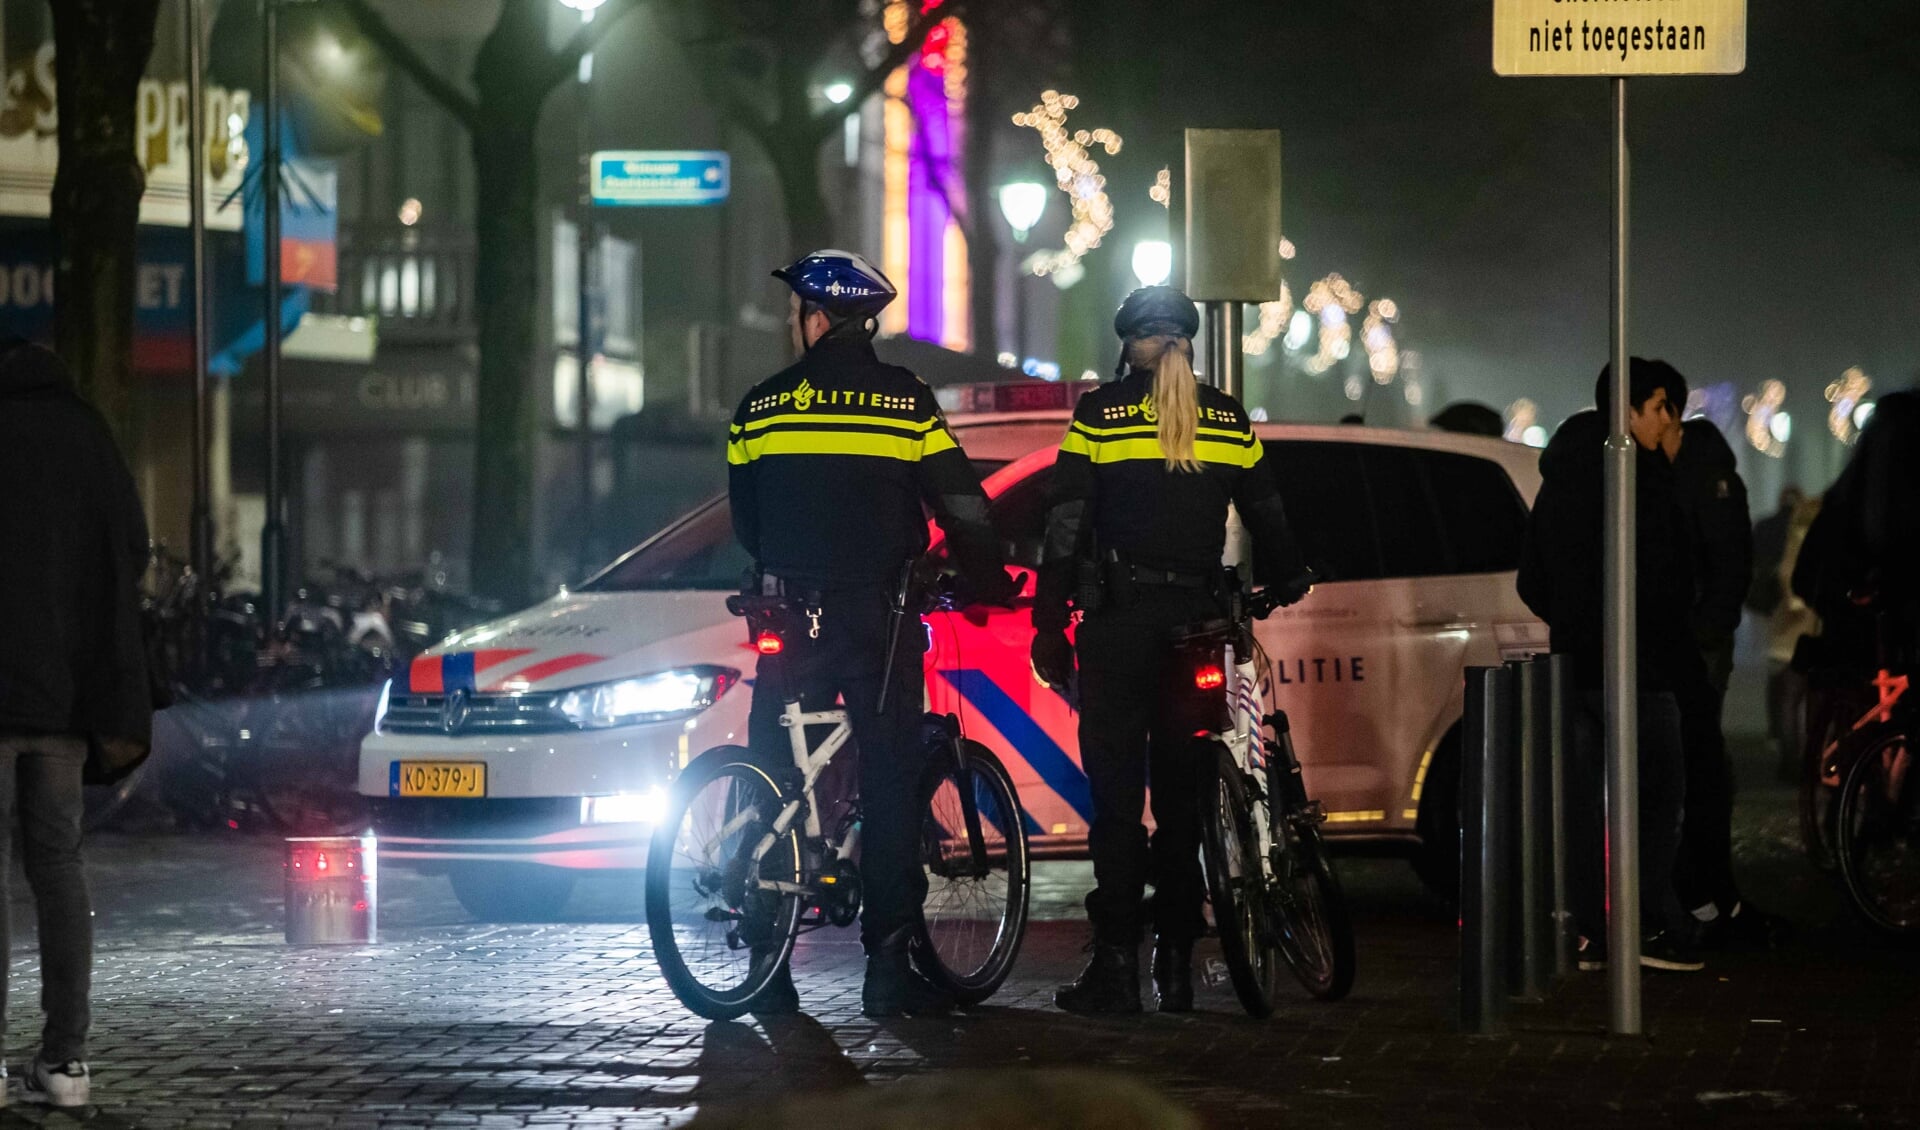 Het uitgaanscentrum van Hilversum. De mensen op de foto waren niet betrokken bij het incident. Foto: Bastiaan Miché